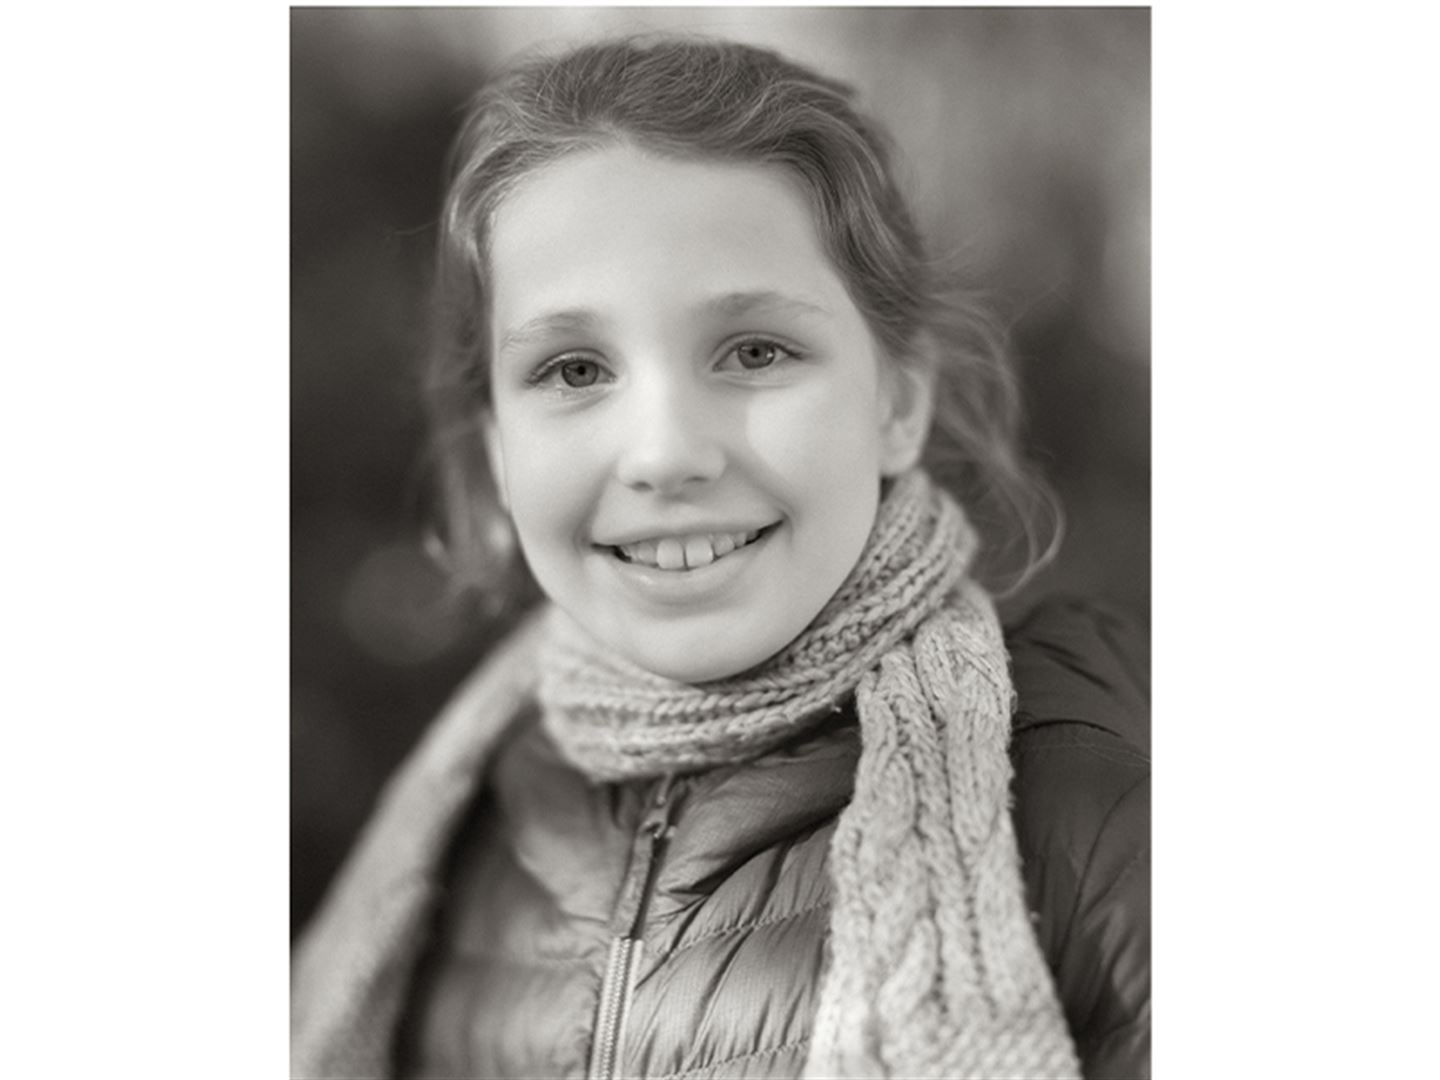 svart-kvitt-foto av ung jente med skjerf